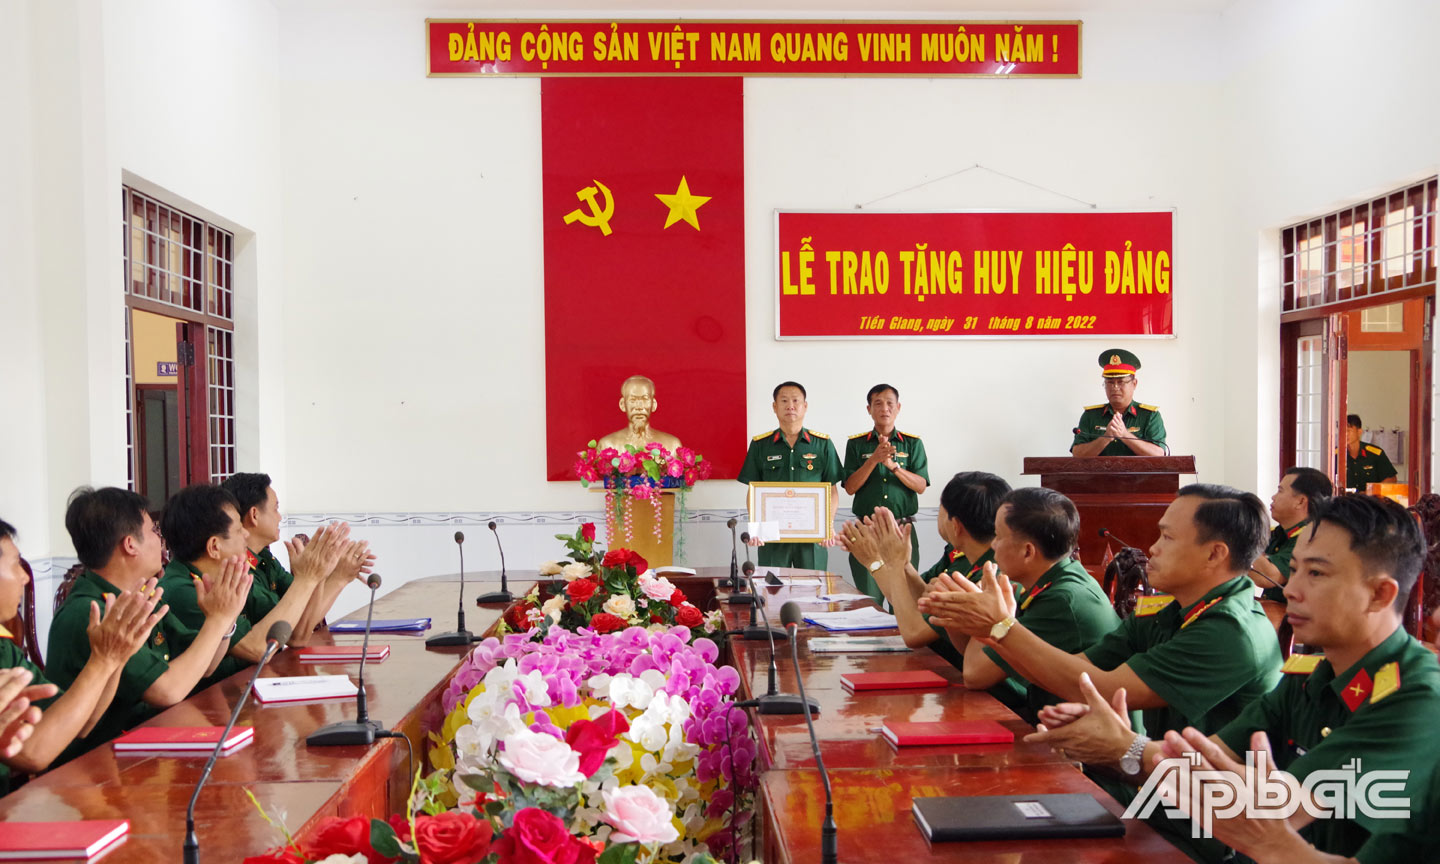 Thượng tá Trần Văn Bé Sáu, Bí thư Đảng ủy Phòng Tham mưu trao Huy hiệu 30 năm tuổi Đảng cho đồng chí Trần Văn Khôi.